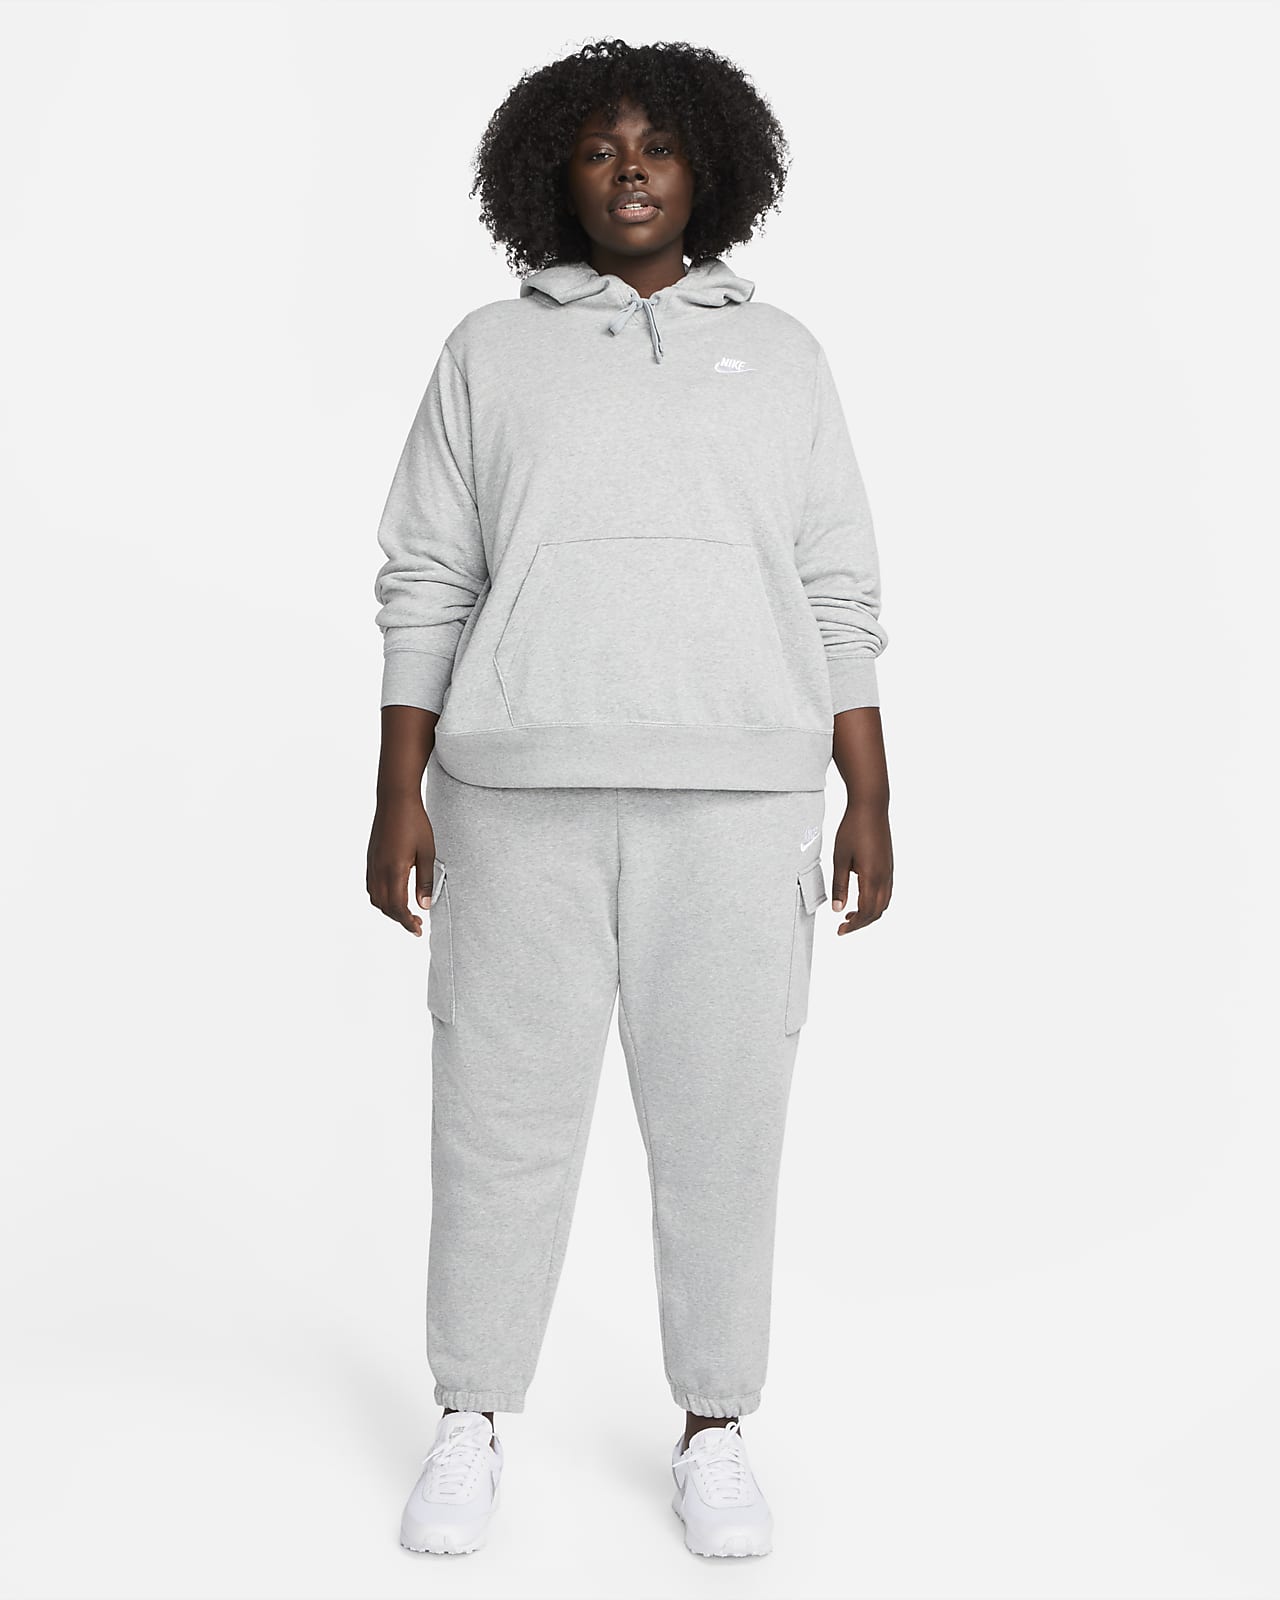 Pants y Chamarra de Entrenamiento Nike para Mujer